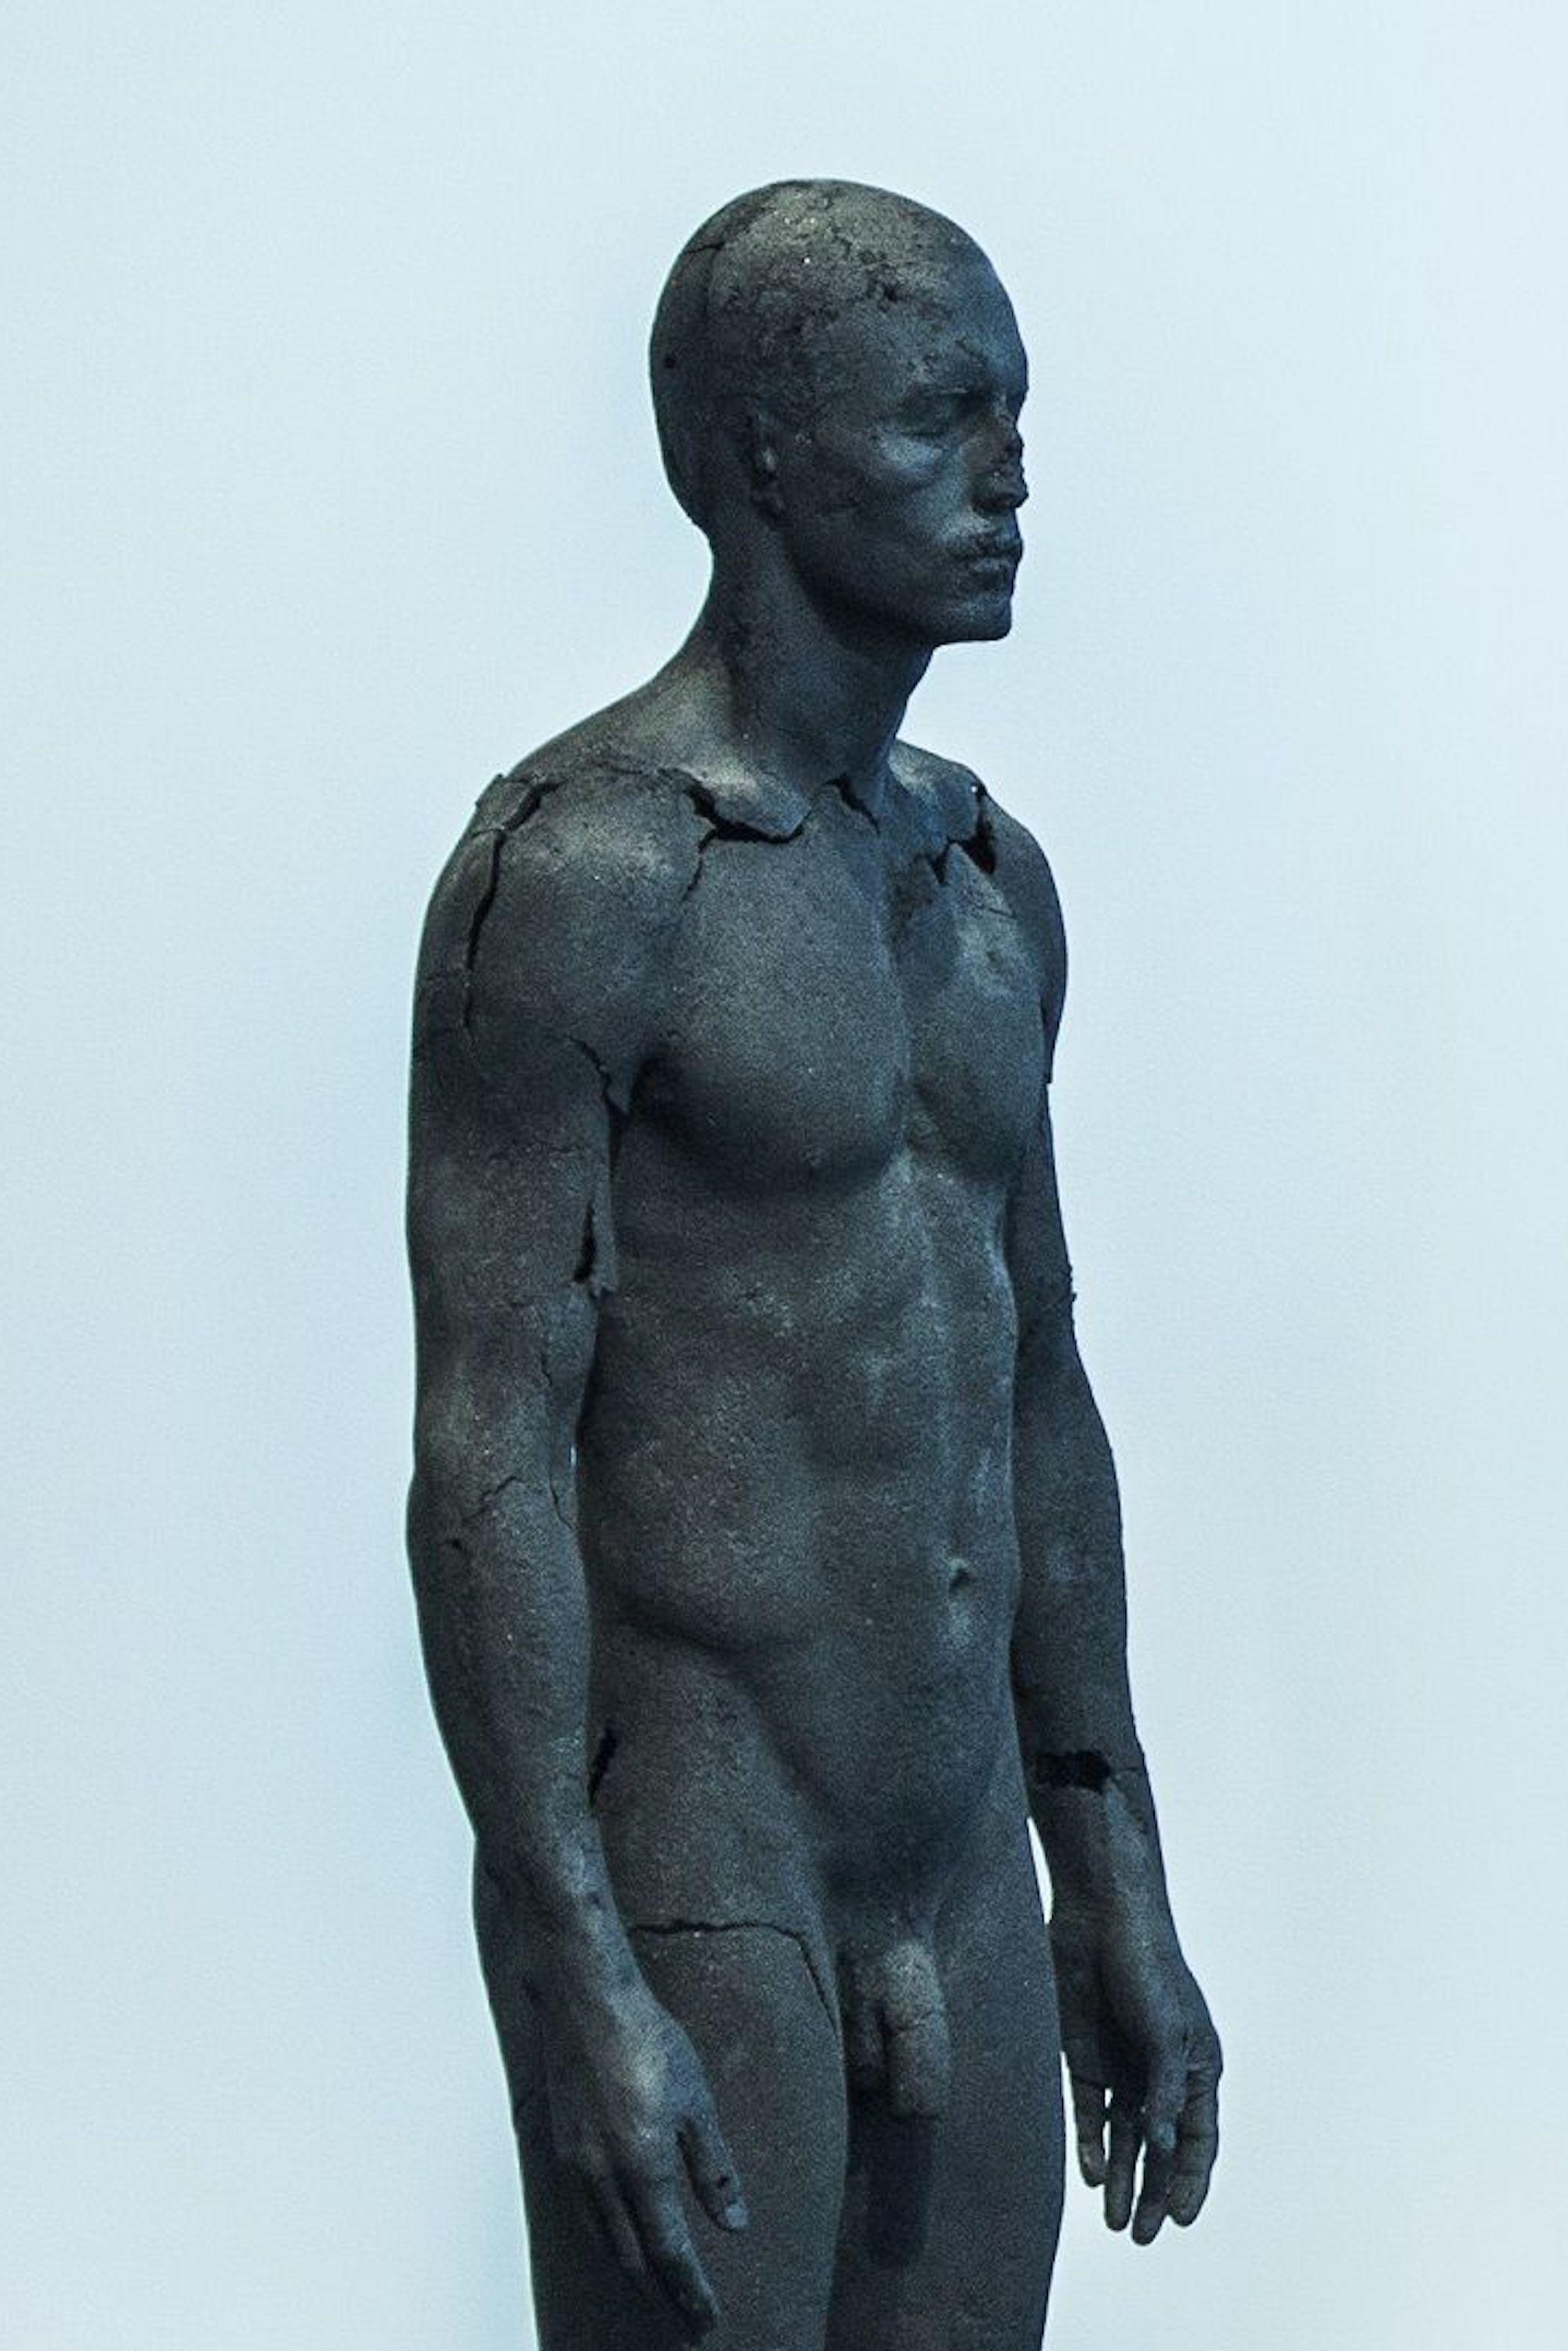 The Presence of Absence - Männlich (I) von Tom Price - Kohleskulptur, nackter Körper im Angebot 3